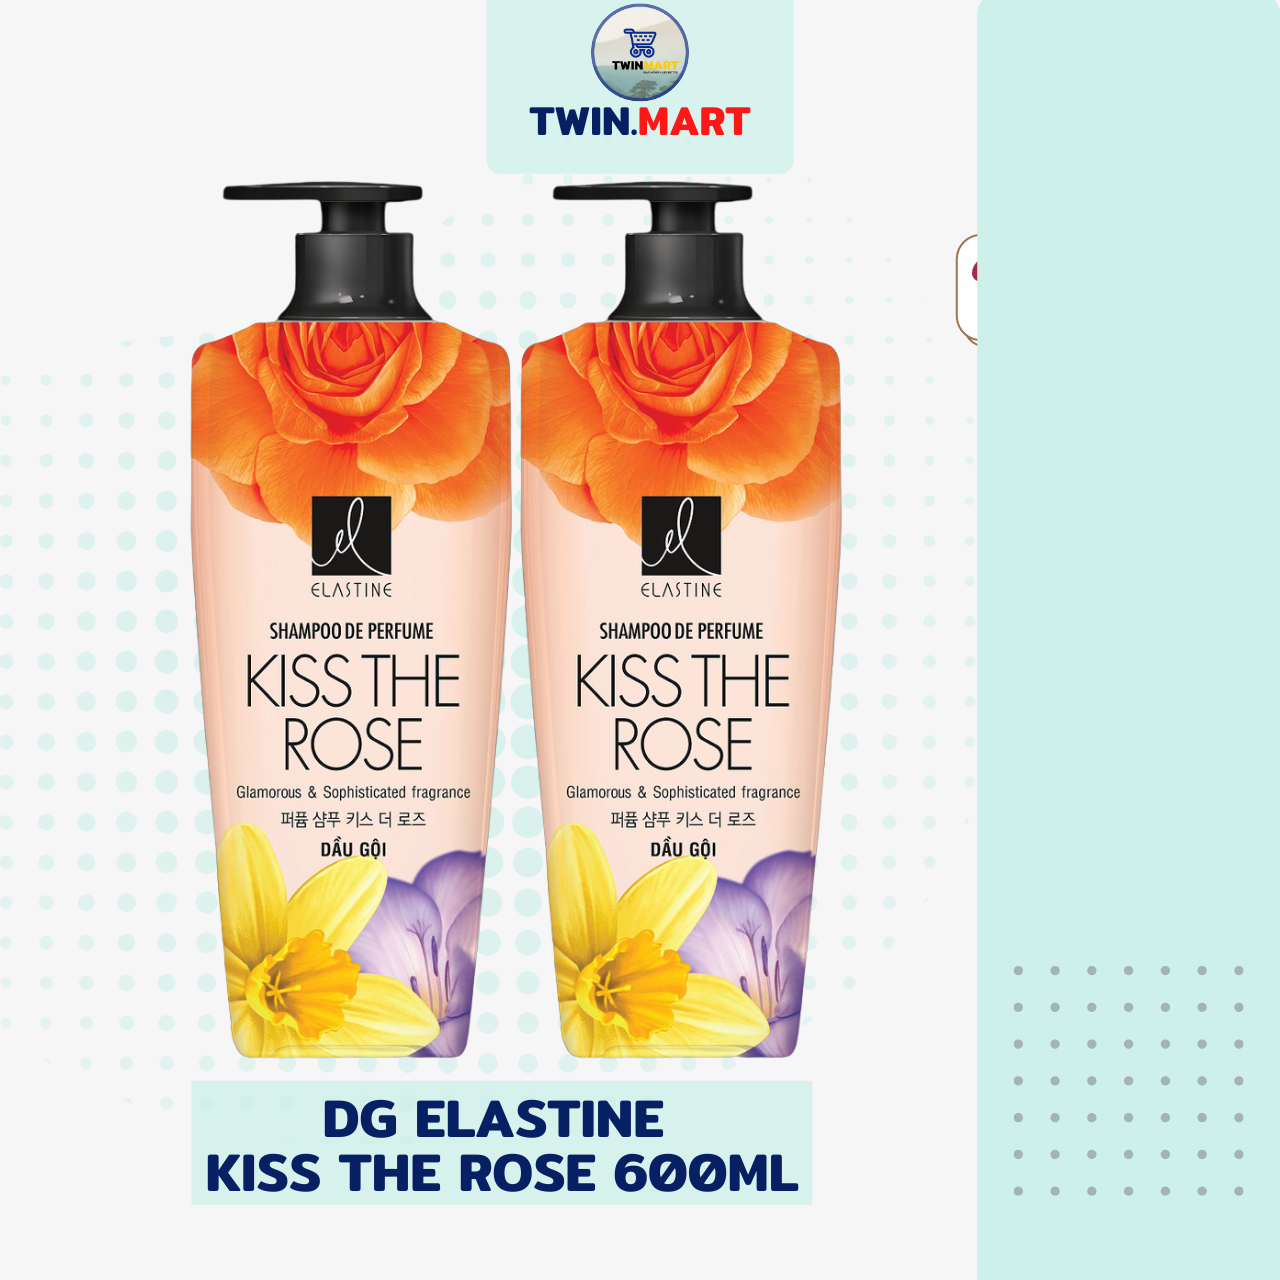 Date xa Dầu gội Elastine hương nước hoa 1000ml và 600ml - Hàn Quốc - hương Kiss the rose